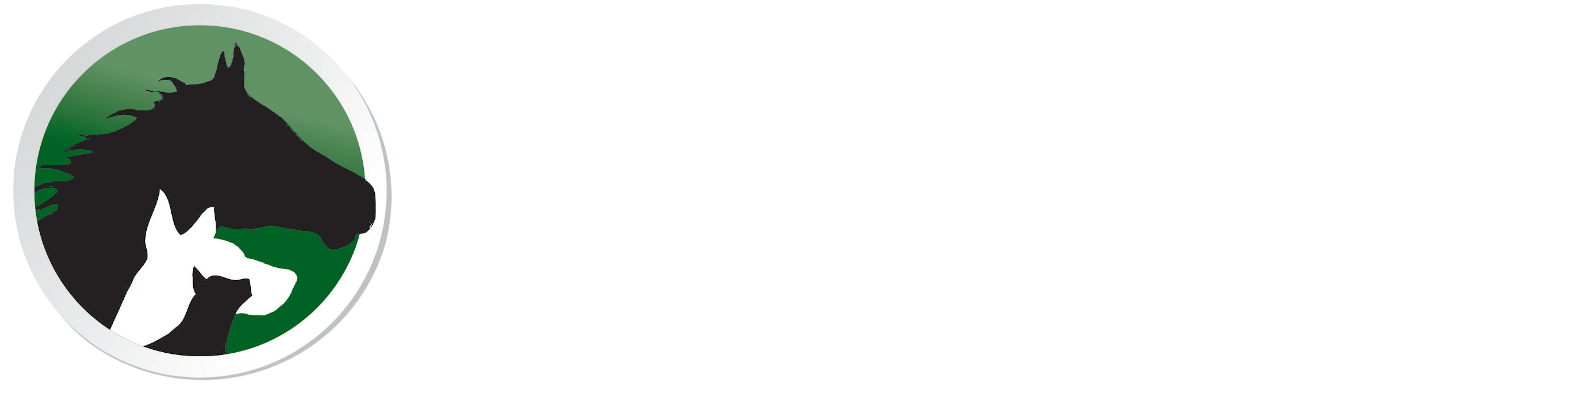 Dogwood Acres Veterinary Clinic logo